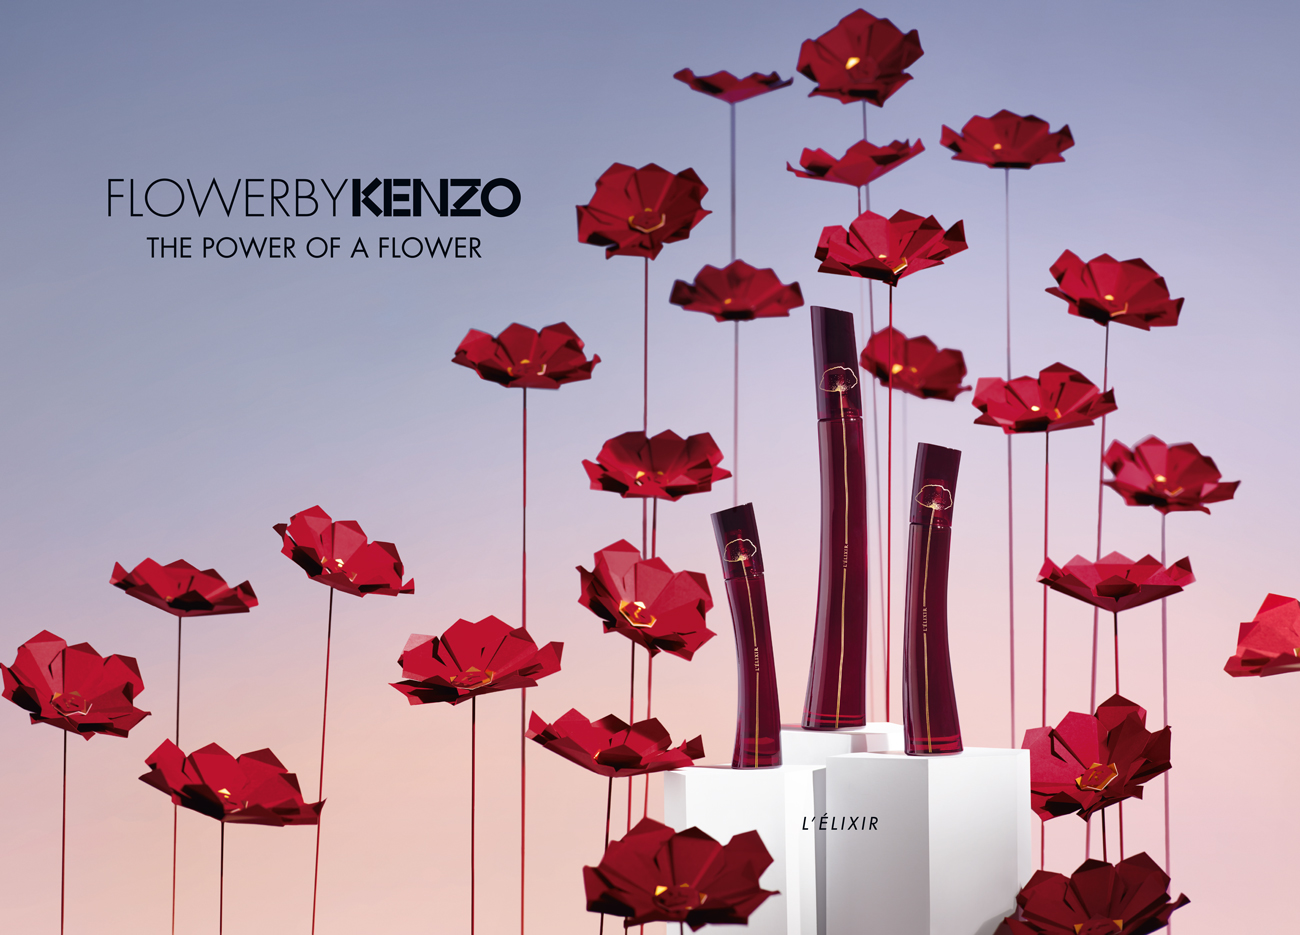 Kenzo studio design Maud Vantours set design paper flowers Paris